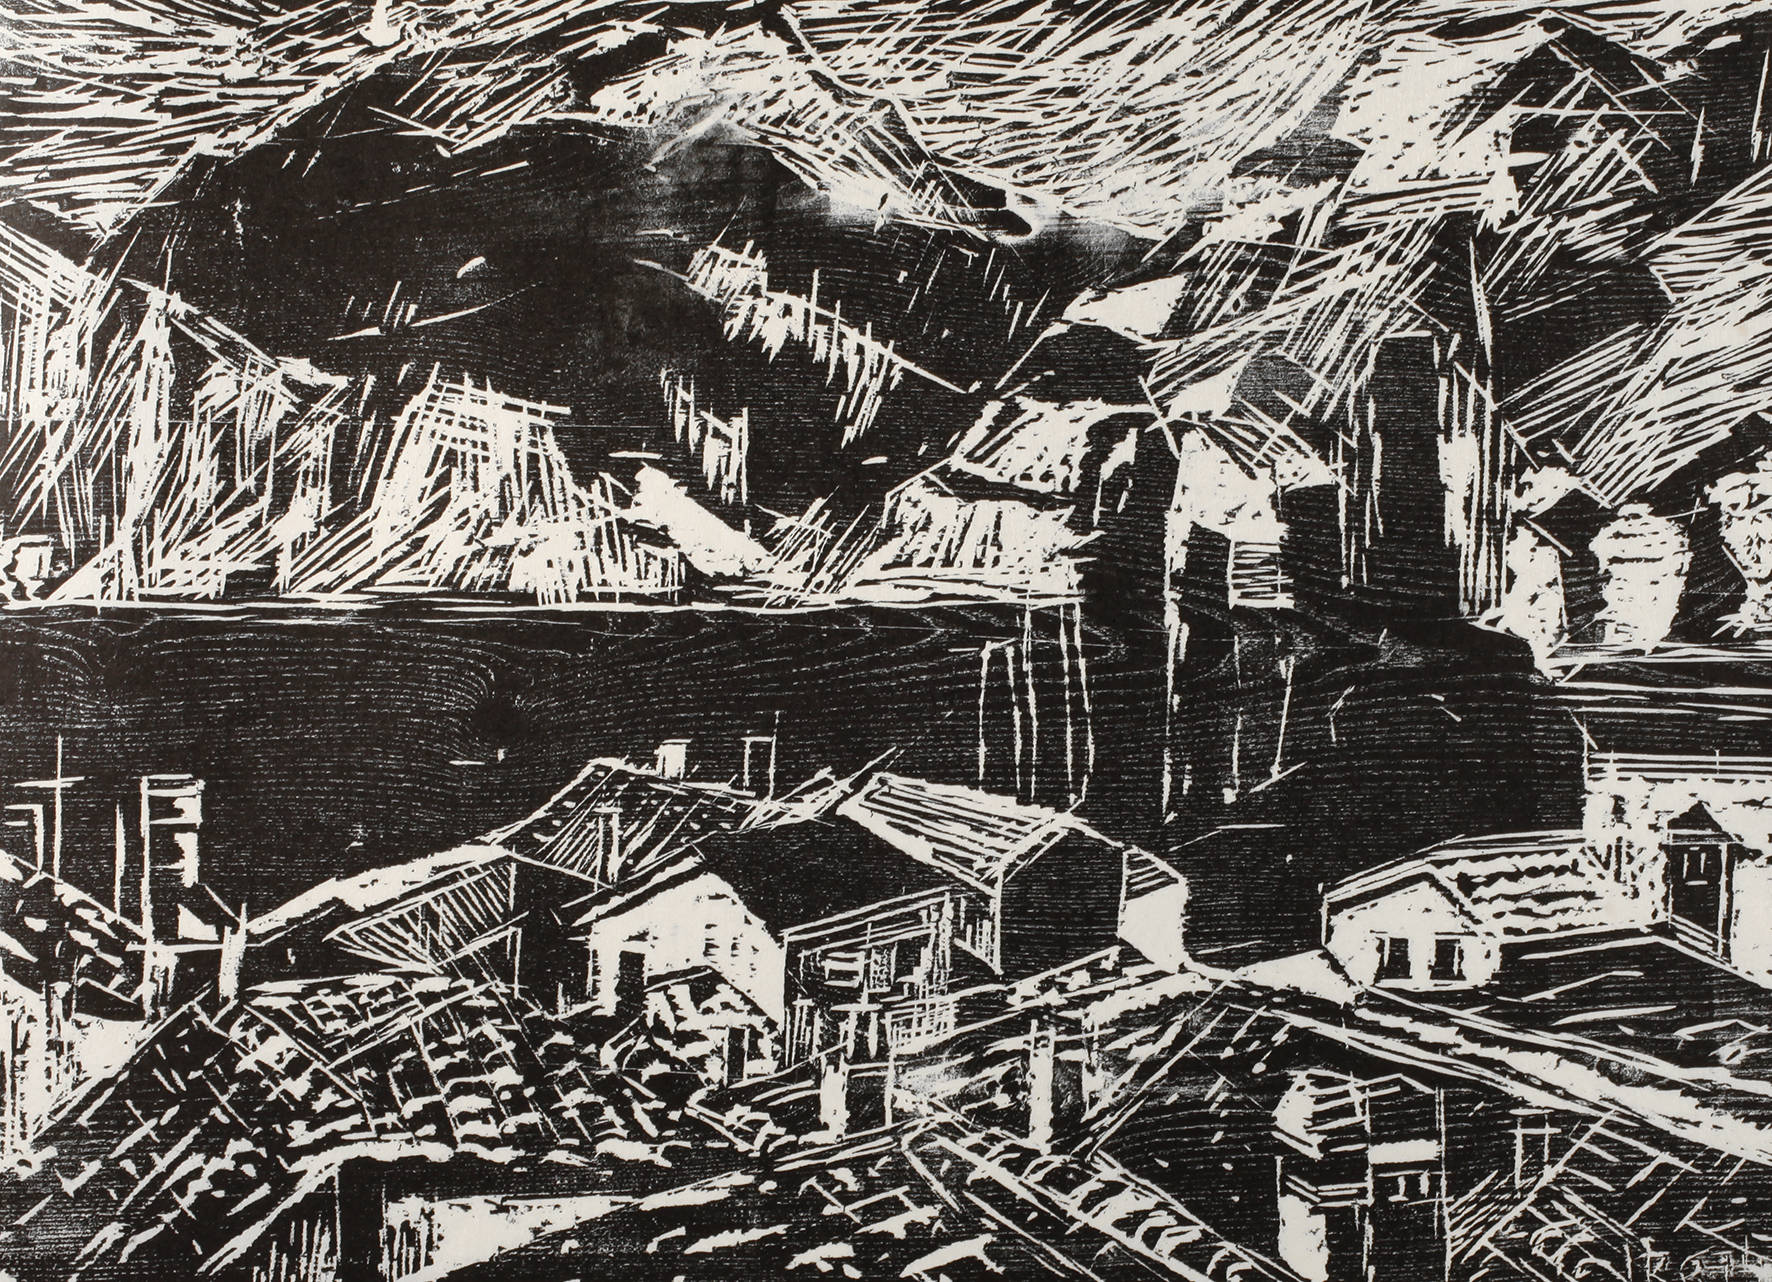 Heinrich Rettner, ”Häuser am Gardasee”